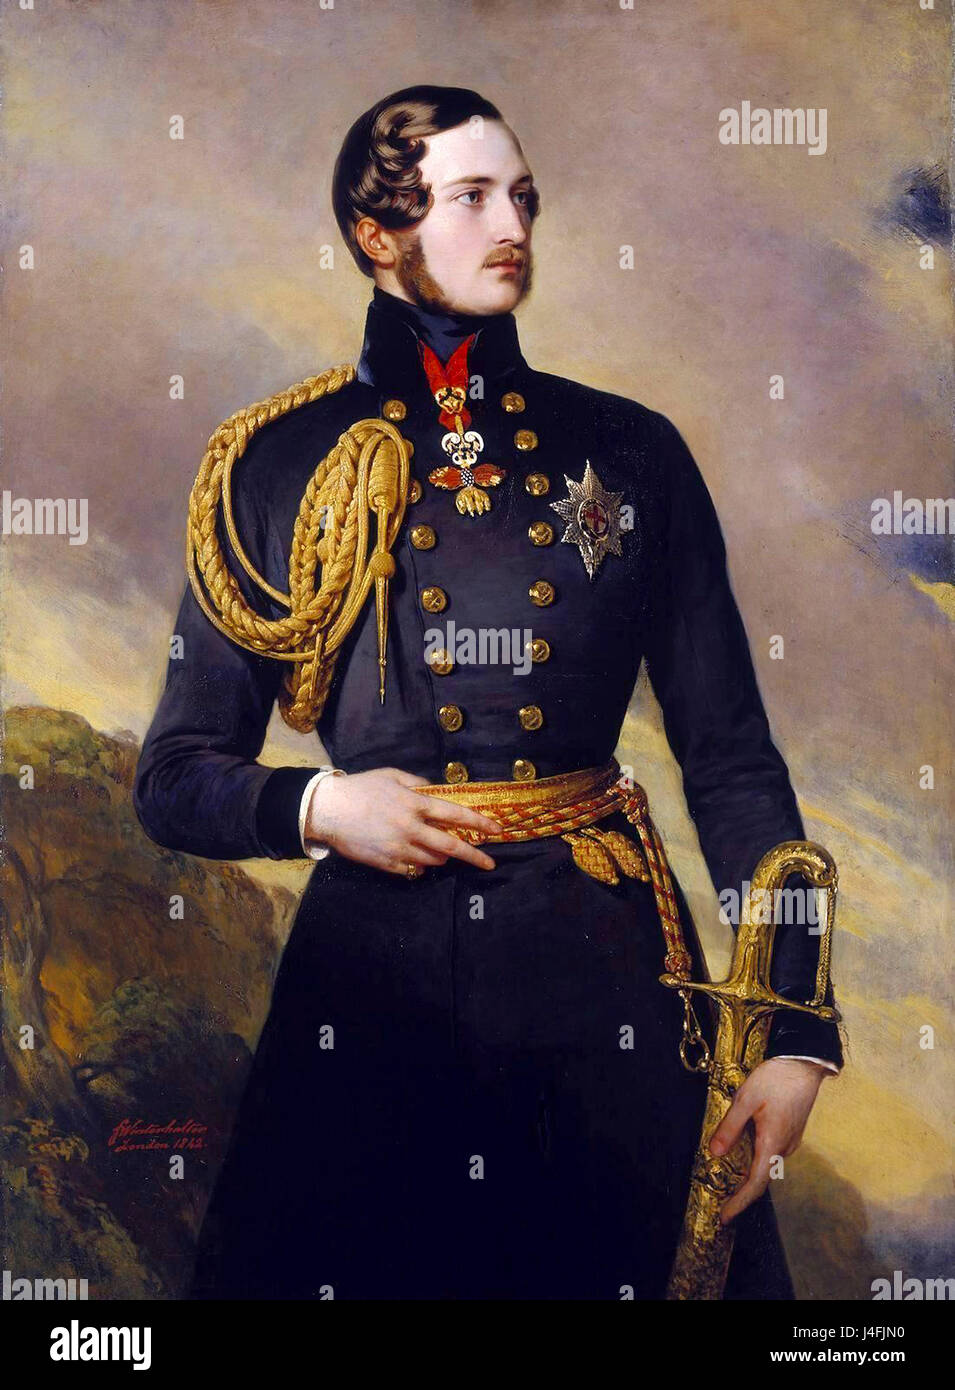 Prince Albert, il Principe Alberto di Saxe-Coburg e Gotha (Francis Albert Augusto Carlo Emanuele) era il marito della Regina Victoria. Foto Stock